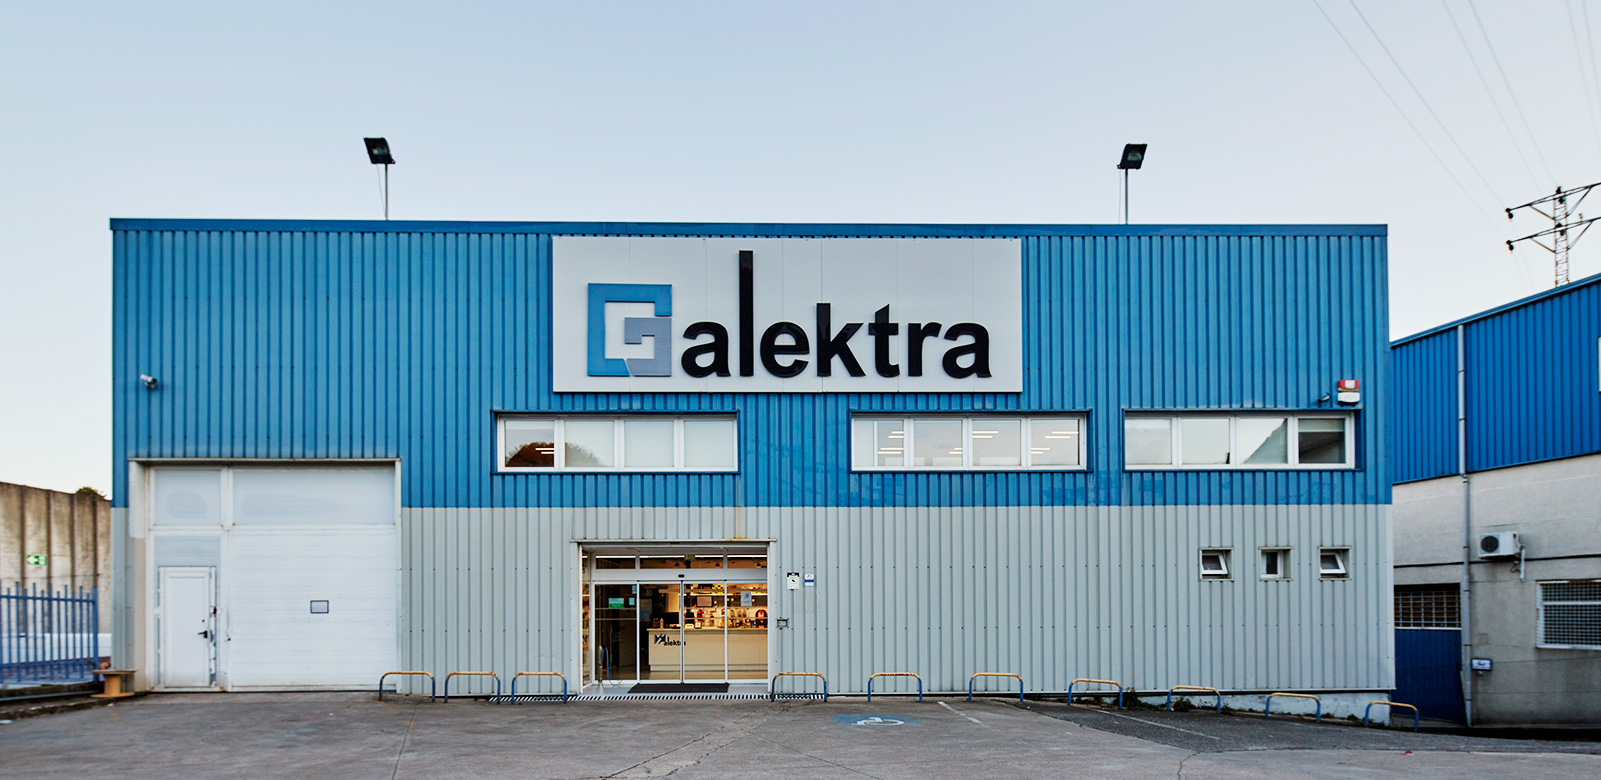 Galektra - Delegación Grupo Elektra